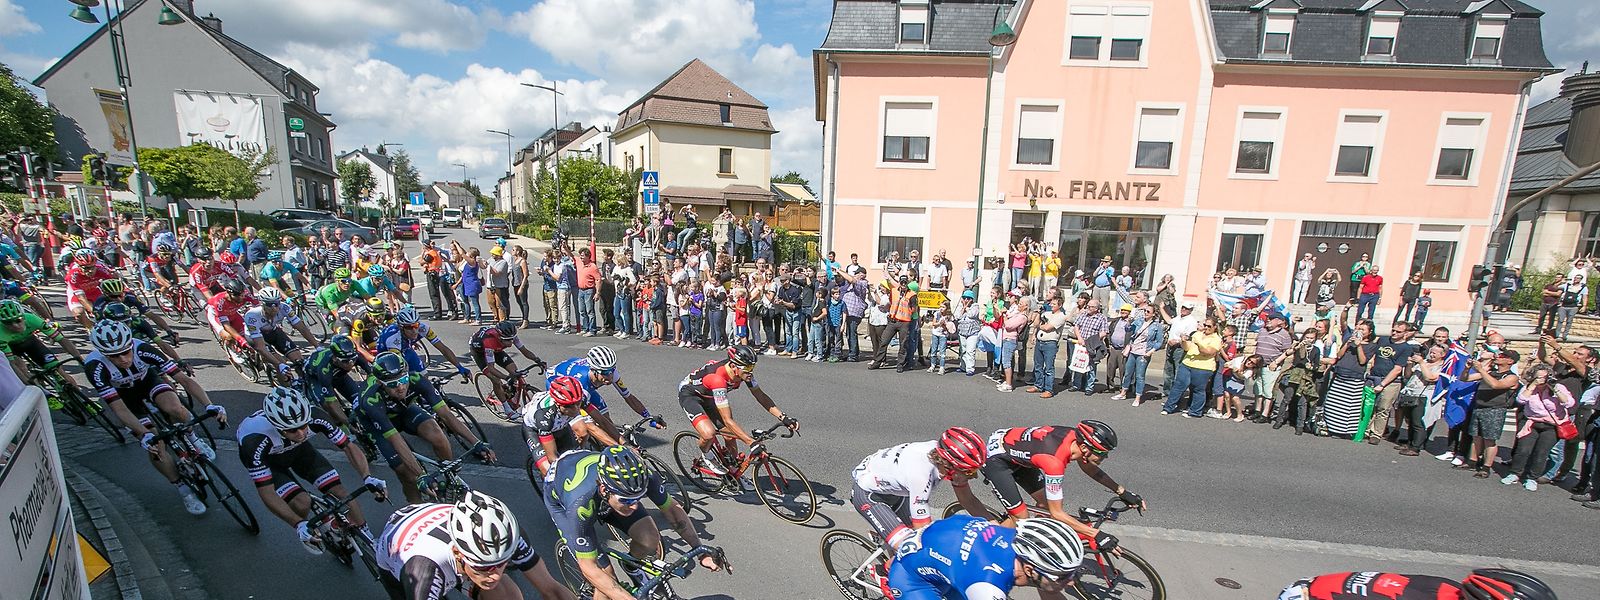 O Tour de France na passagem por Mamer.